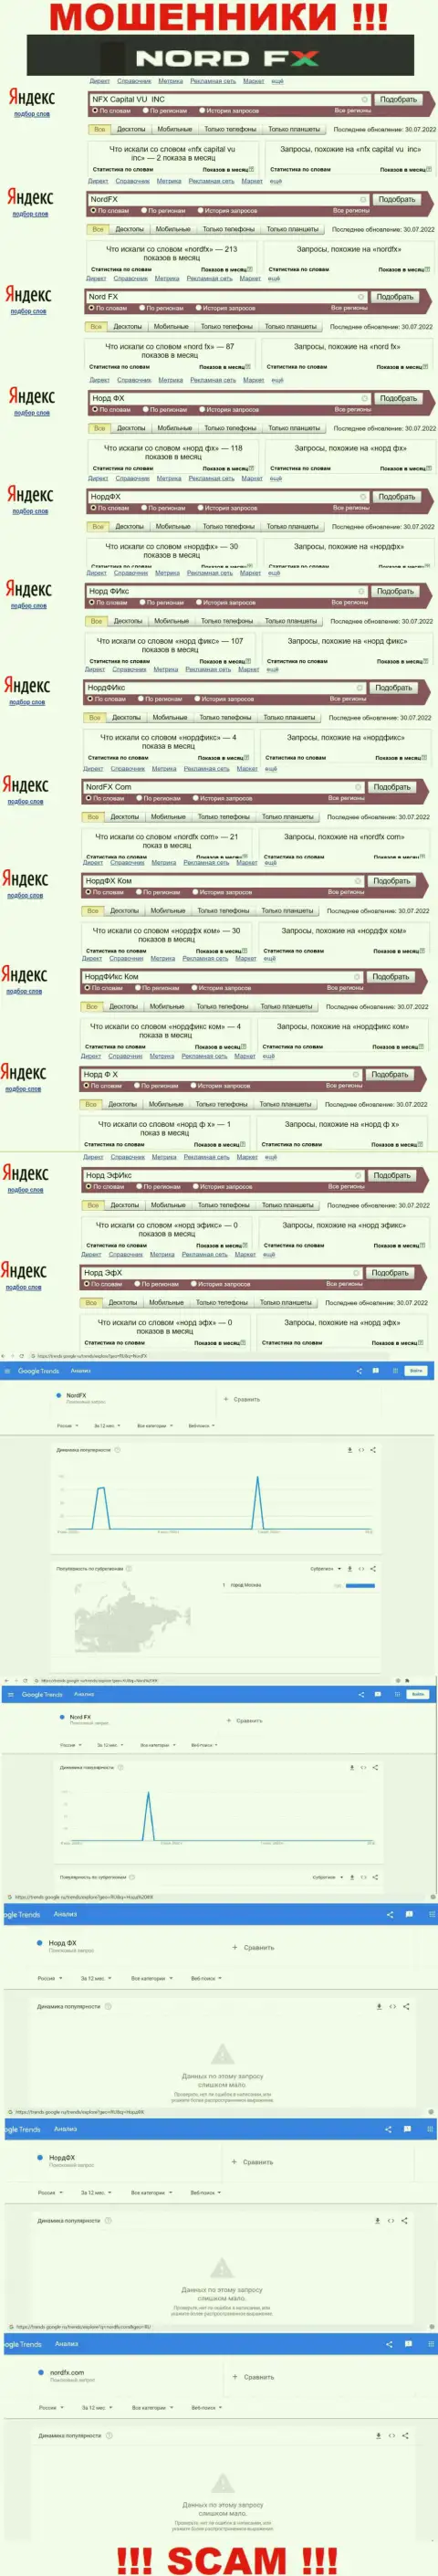 Суммарное число online-запросов в поисковиках internet сети по бренду мошенников НордФИкс Ком